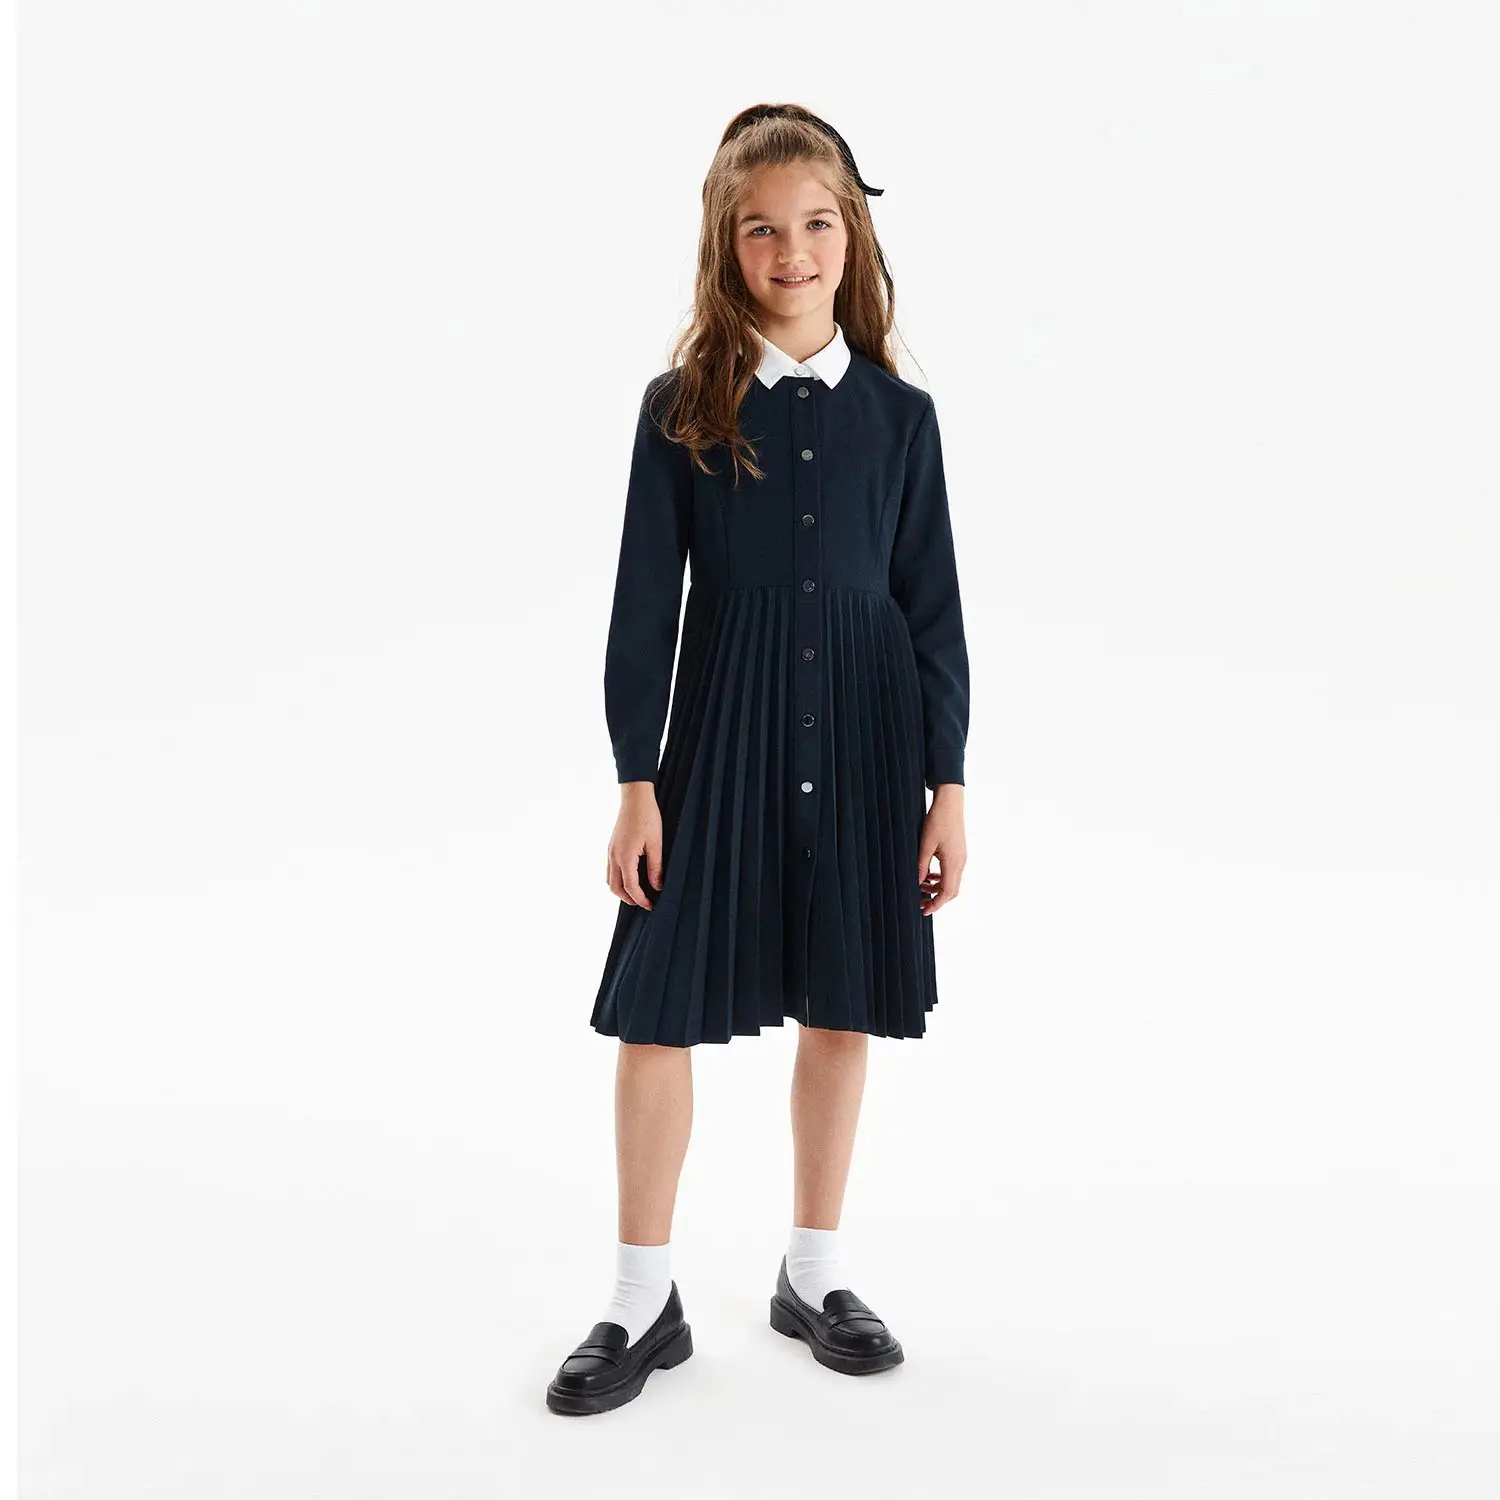 Vestido de manga comprida plissado midi para meninas adolescentes, uniforme escolar, vestido elegante para festa de volta às aulas